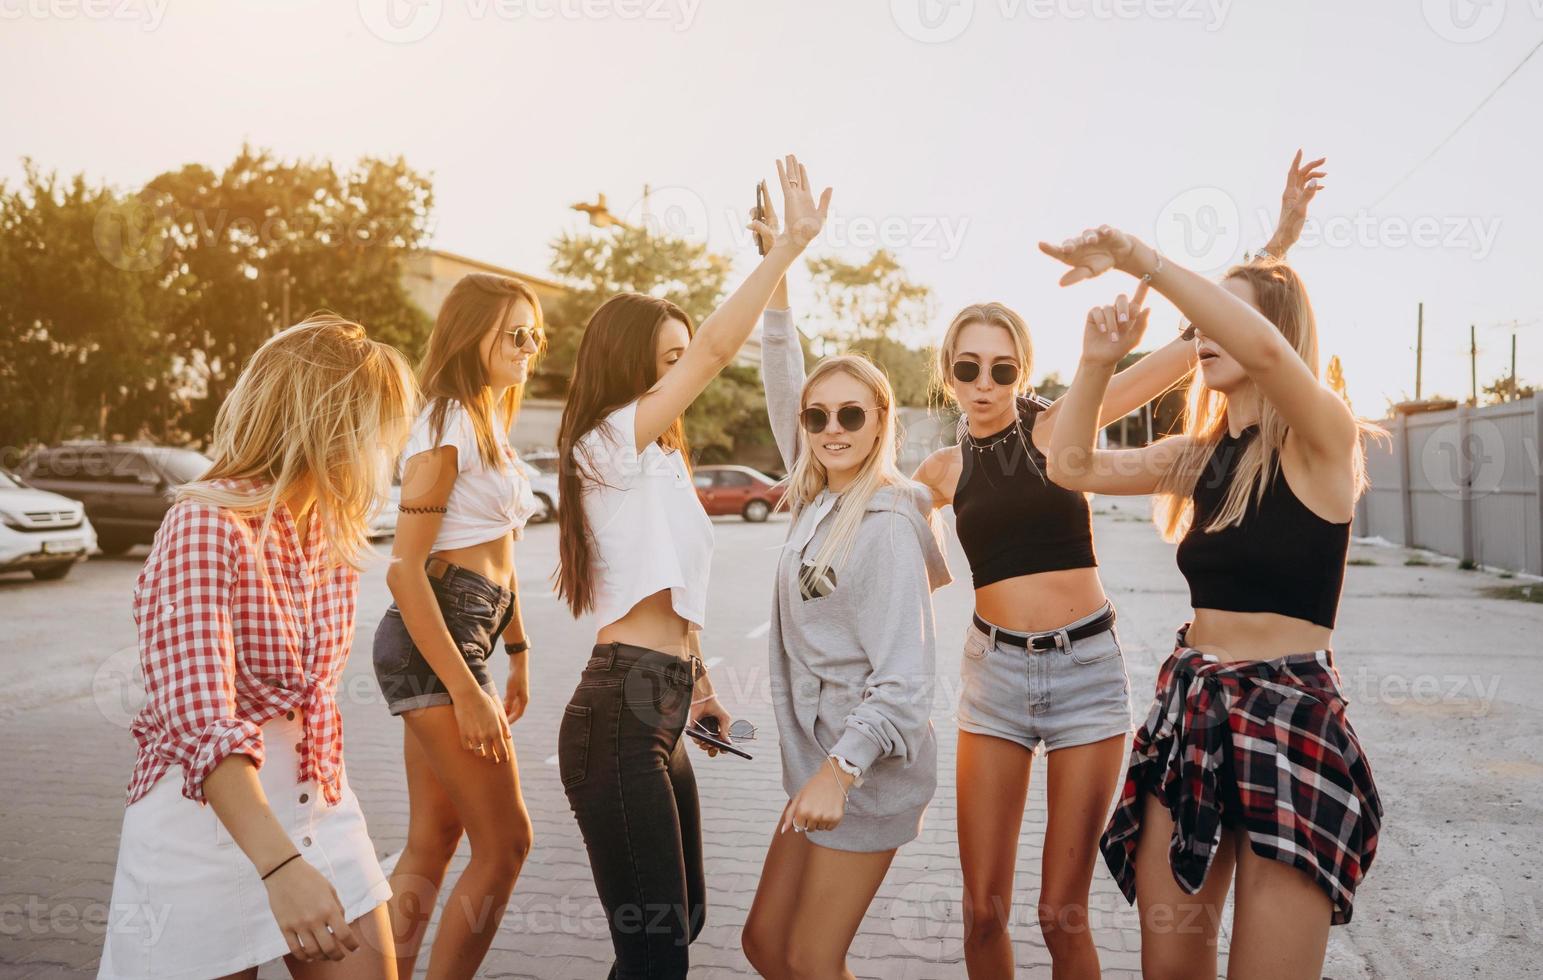 sex ung kvinnor dansa i en bil parkera foto